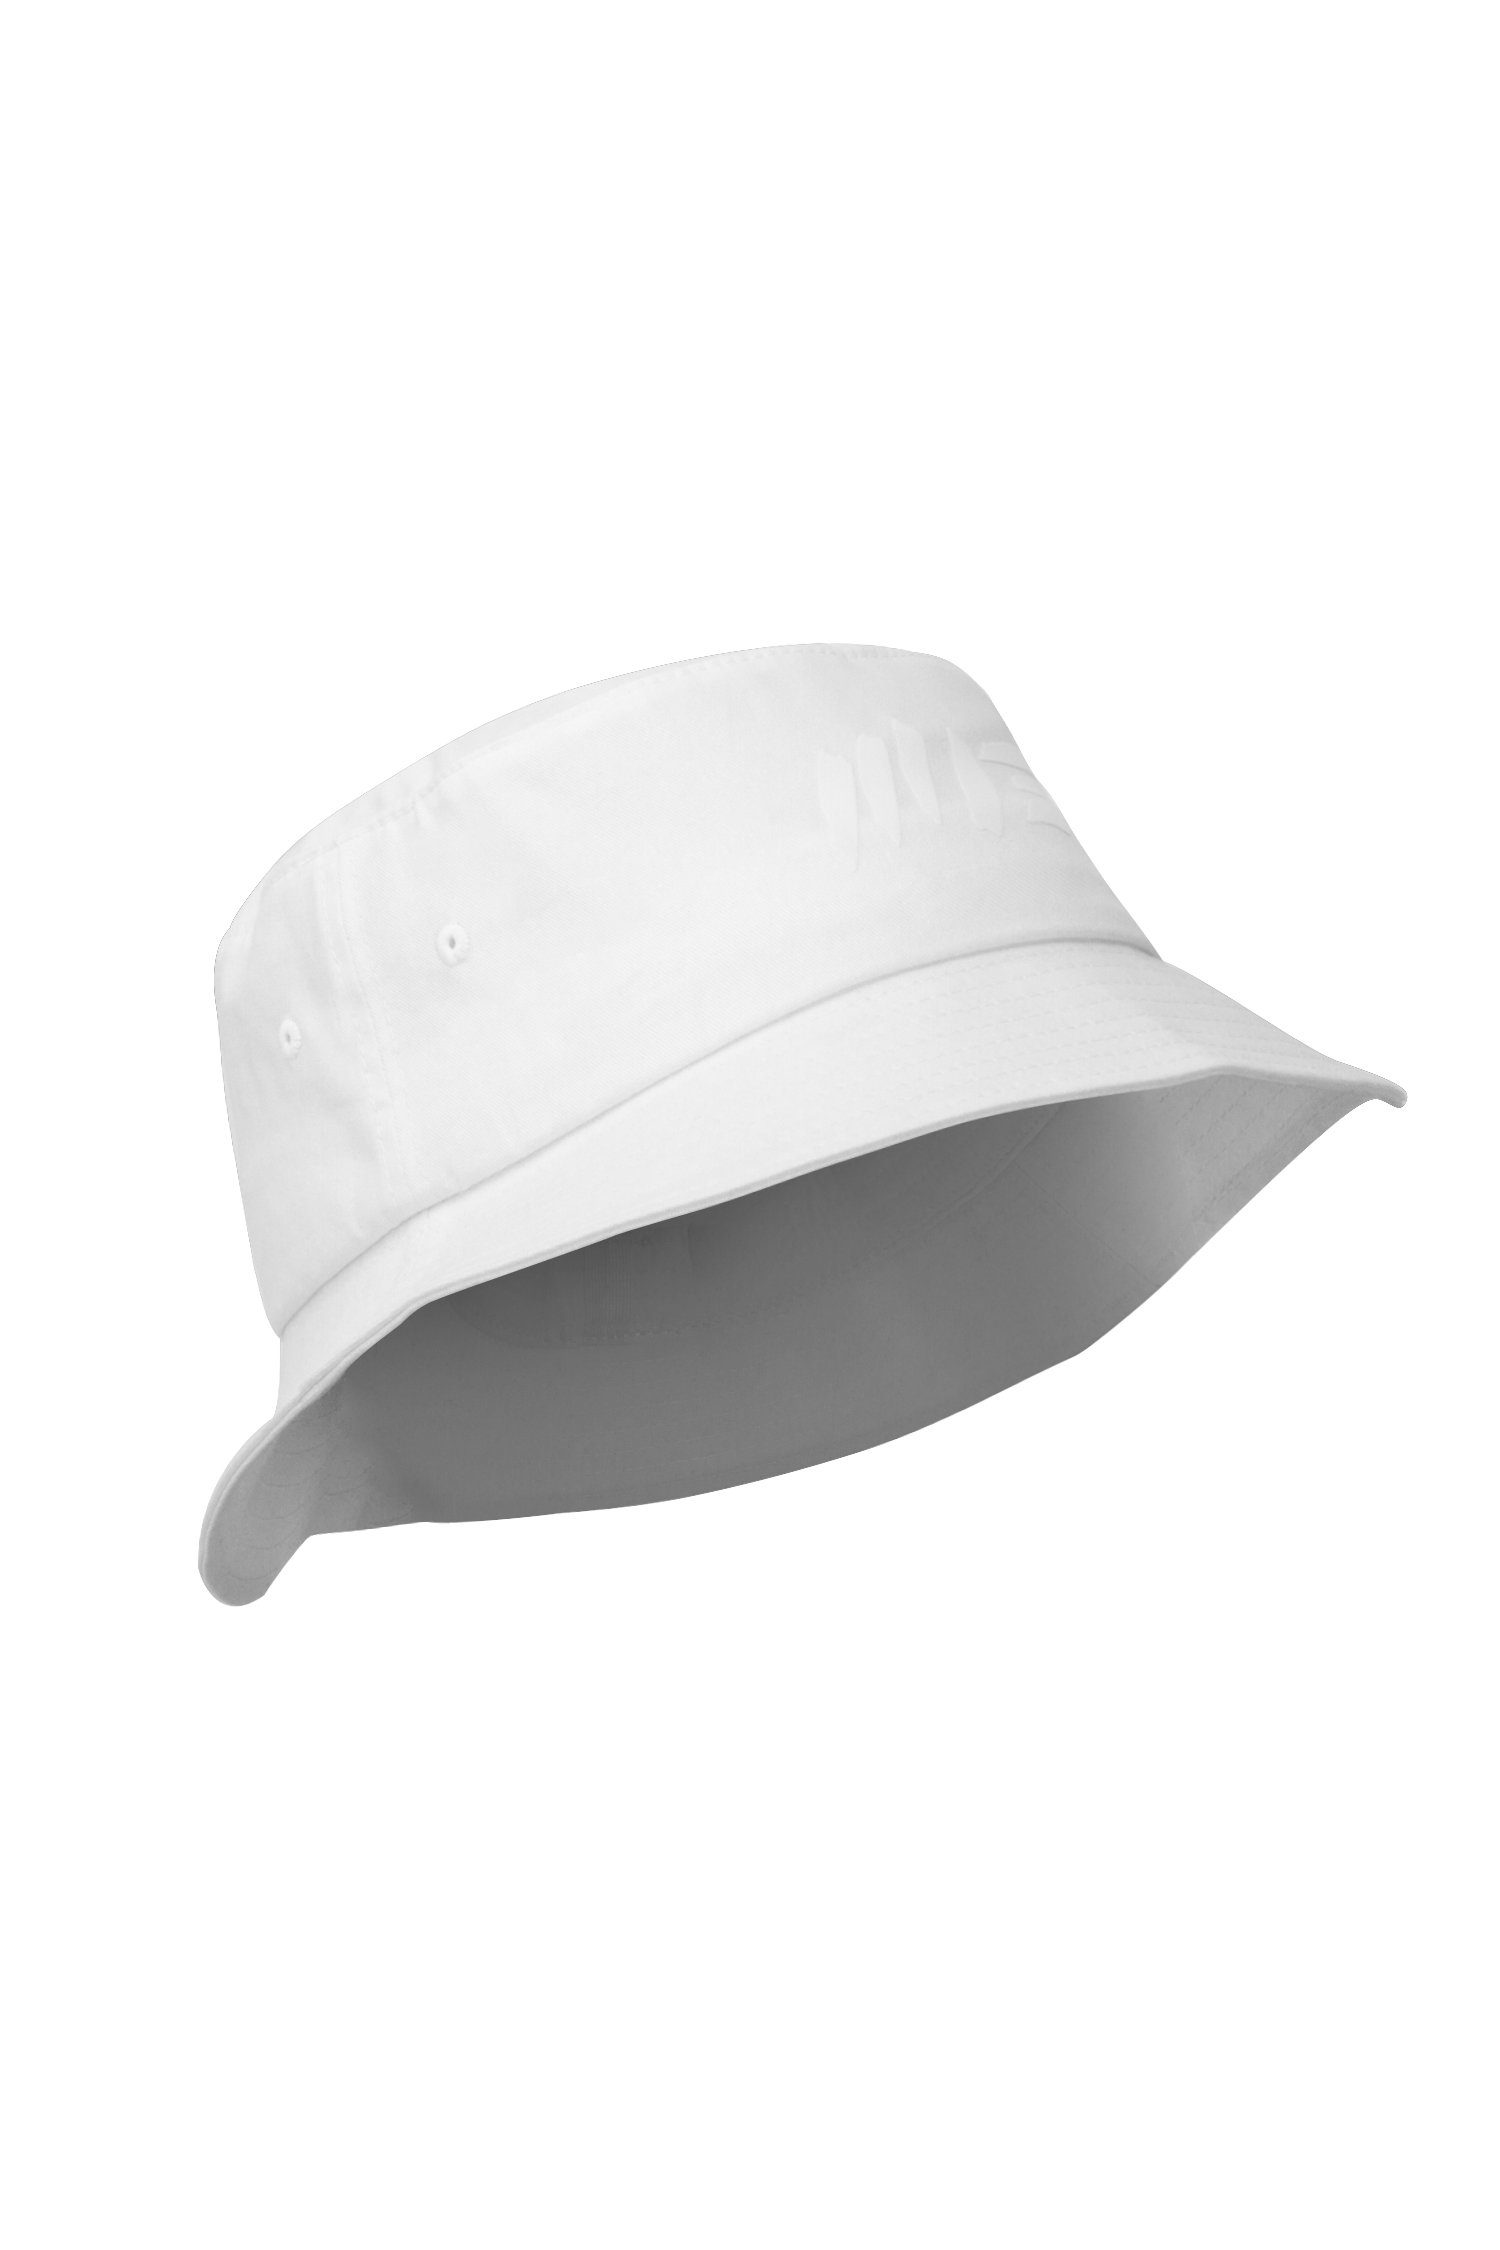 - Anglerhut, Hat Hat, Vegan Bucket Session Manufaktur13 M13 Fischermütze 100% White Fischerhut